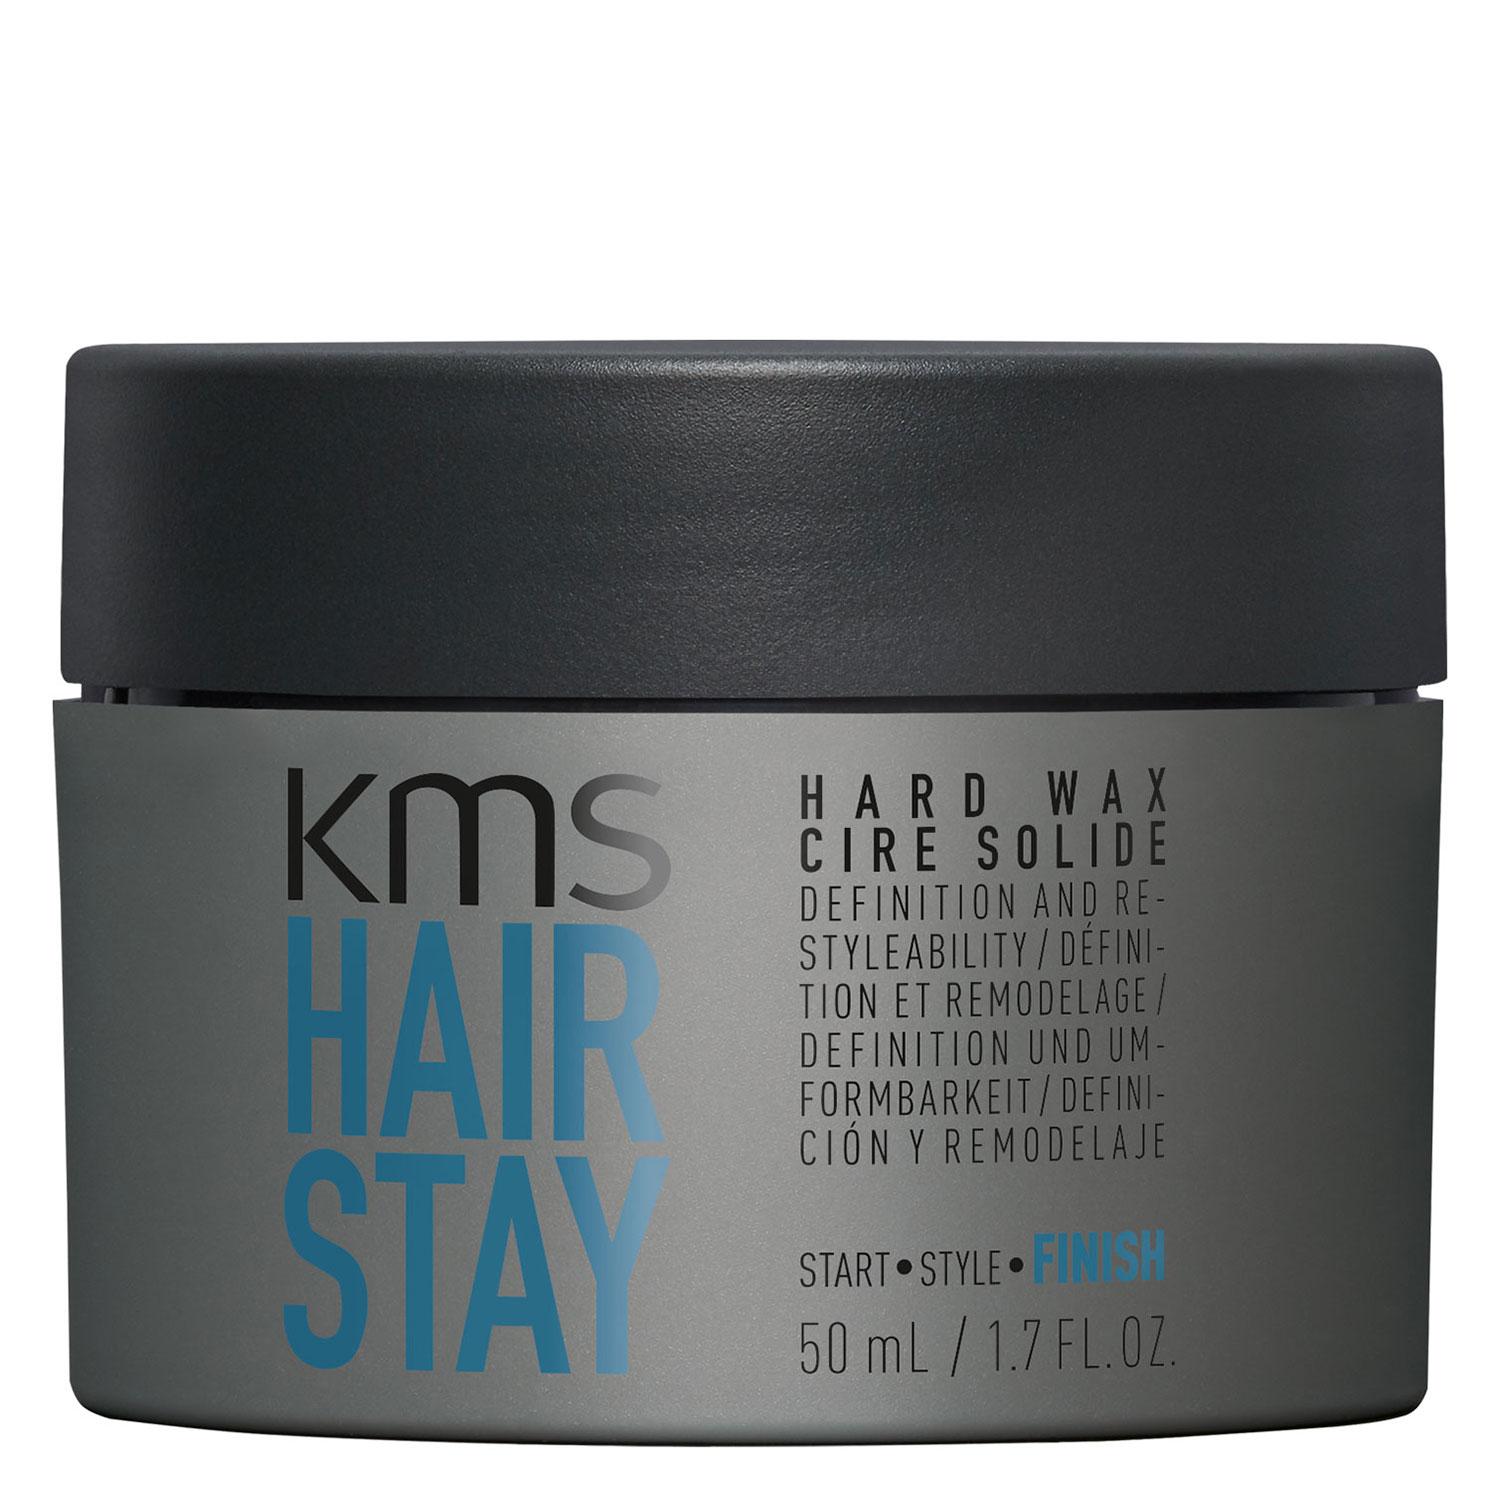 Hairstay - Hard Wax